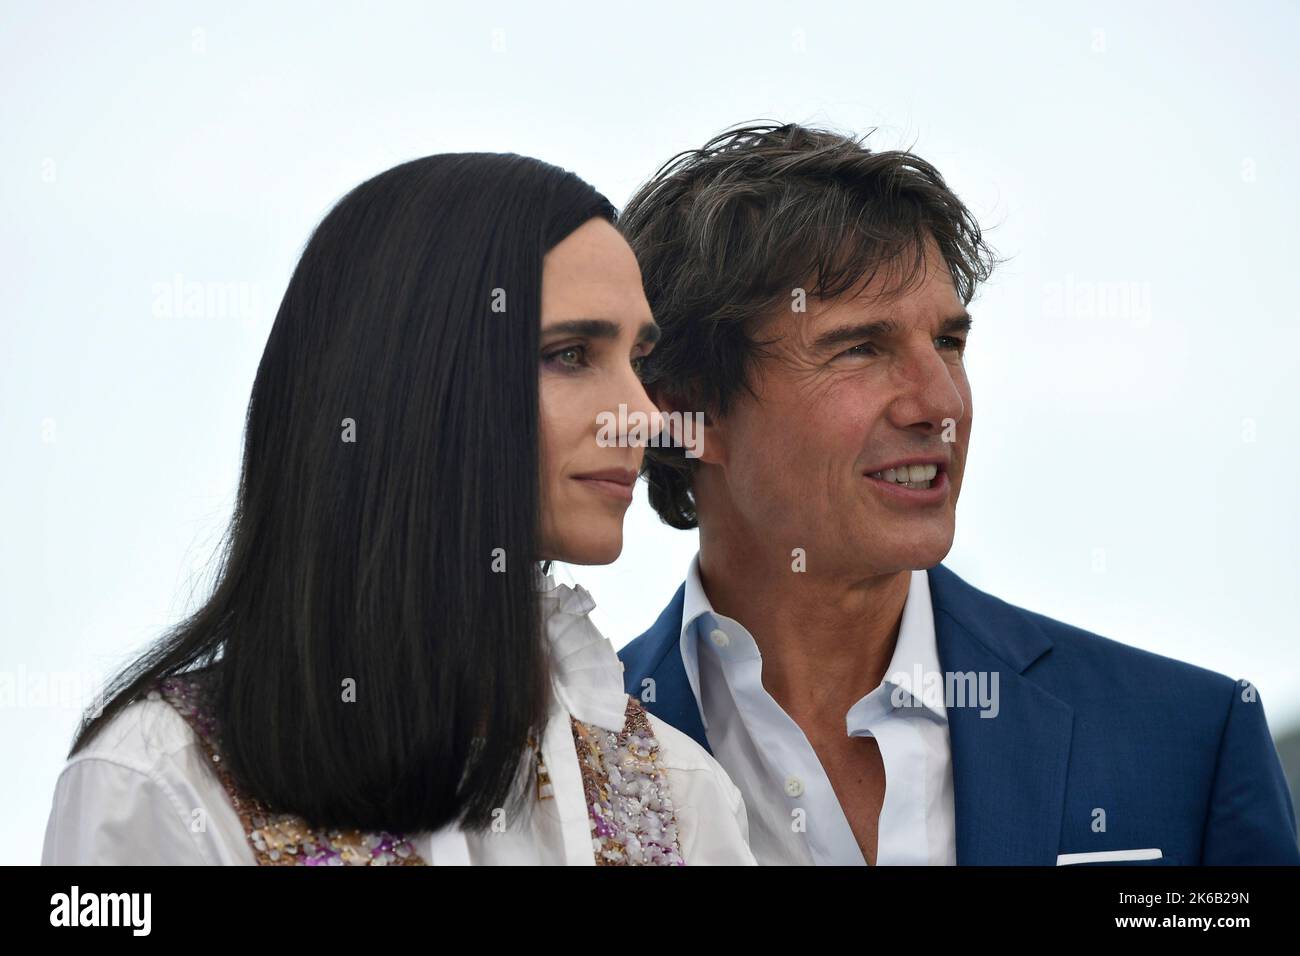 Schauspieler Tom Cruise und Schauspielerin Jennifer Connelly posieren während der Fotoaufnahme des Films „Top Gun: Maverick“ anlässlich der Filmfestspiele von Cannes Stockfoto